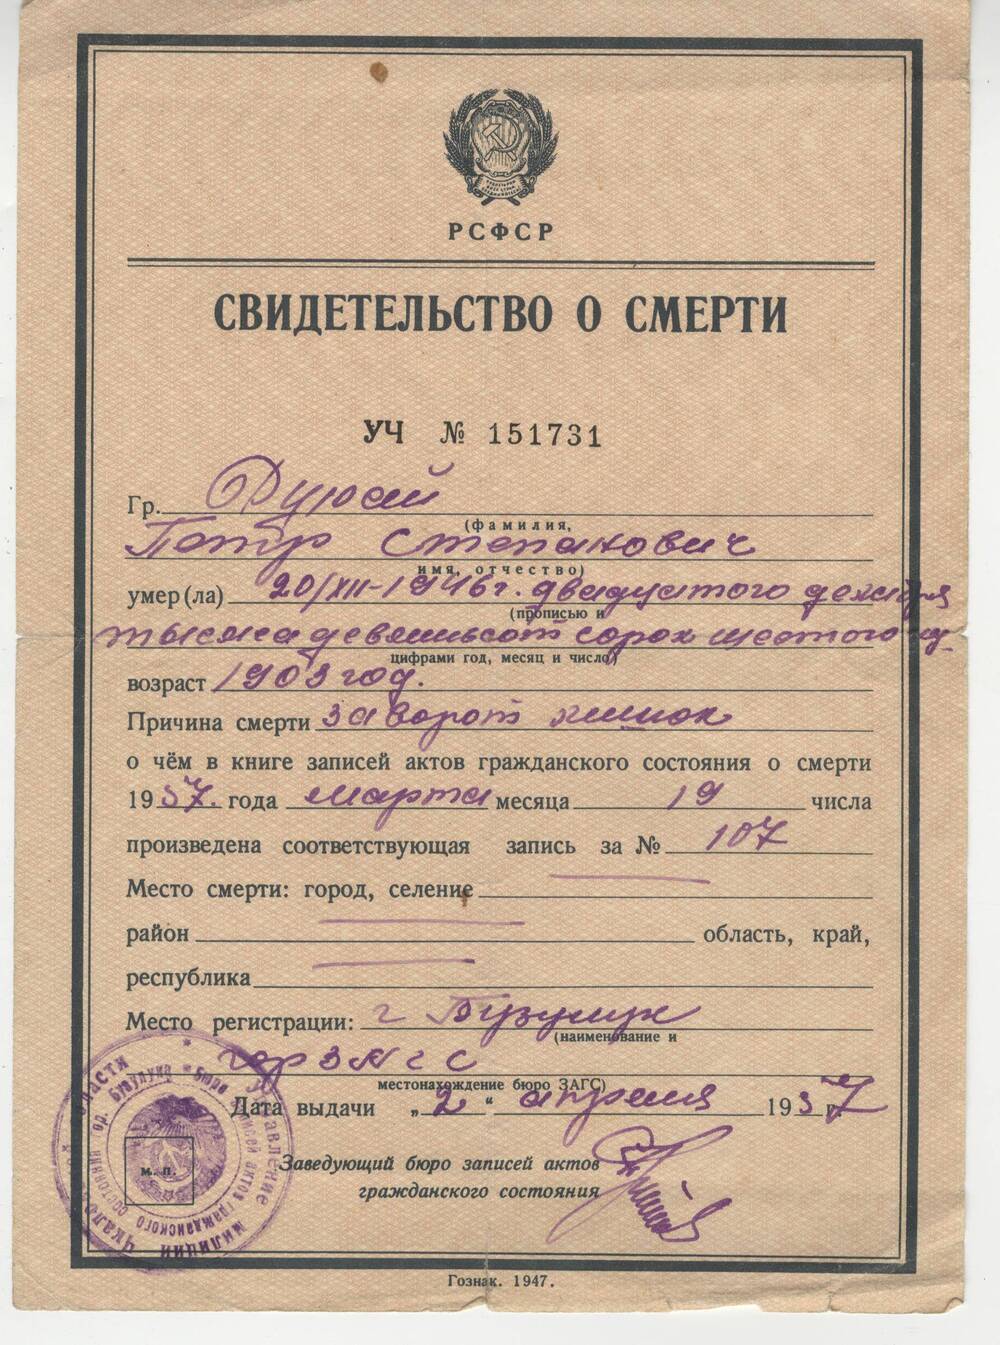 Свидетельство о смерти УЧ № 151731107 Дурай Петра Степановича, репрессированного в 1937 г., выданное 19 марта  1957 года